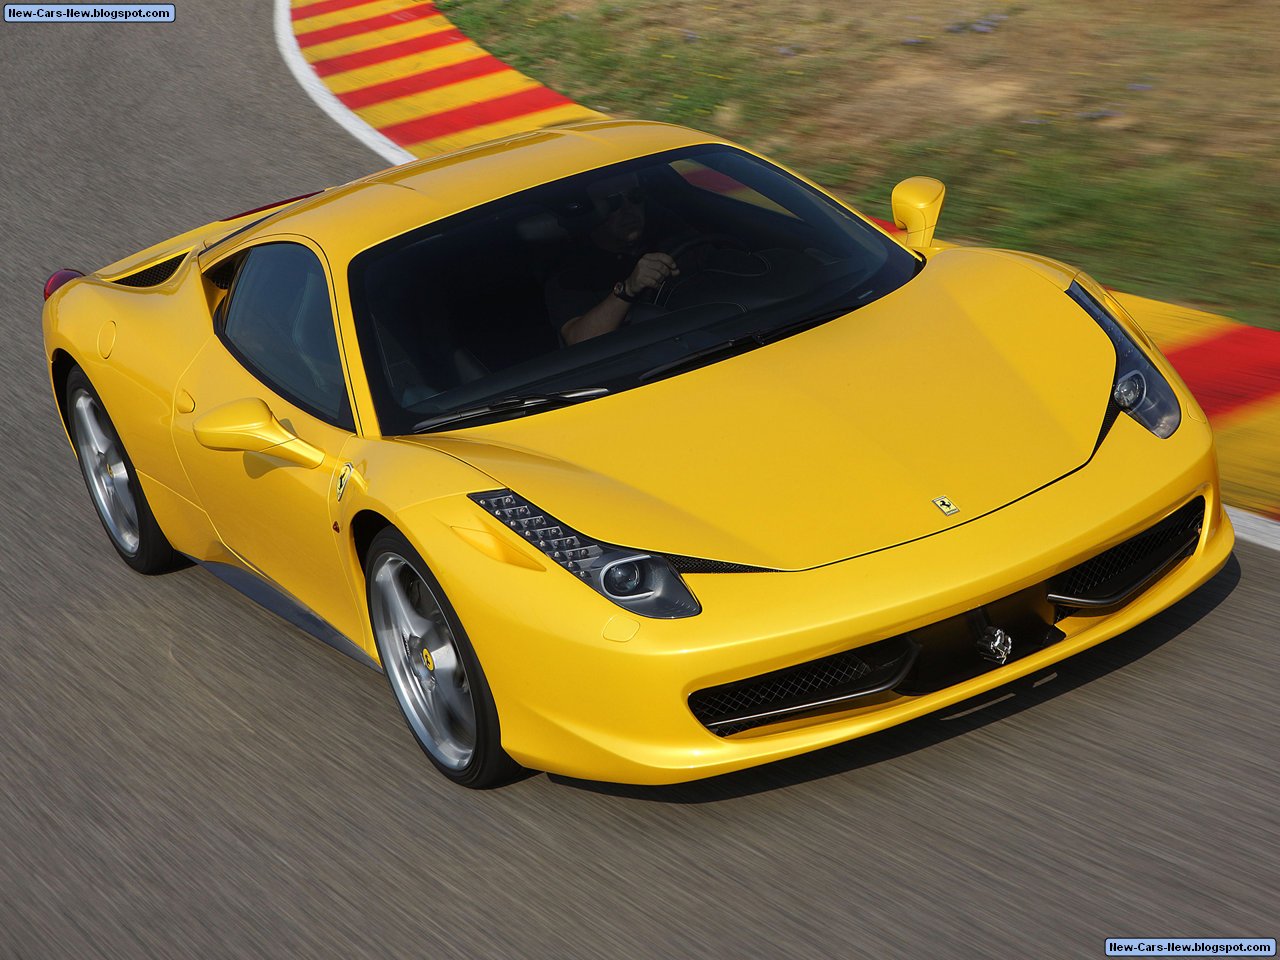 https://blogger.googleusercontent.com/img/b/R29vZ2xl/AVvXsEjiYHGGMH8ip5AET8dTh5oC9hFYrnJIZ8Z0DCkUmlDwQqEbqeYNfTi4lPSZwSnxhm3wGwU5lJgaCpAdxezQRZfWmck5juE4pZq6TwwUs7JmuOZt9sfjL_Ld6NnItE_vOy2FVFqWqVpZF3XF/s1600/Ferrari-458_Italia_2011_1280x960_wallpaper_12.jpg